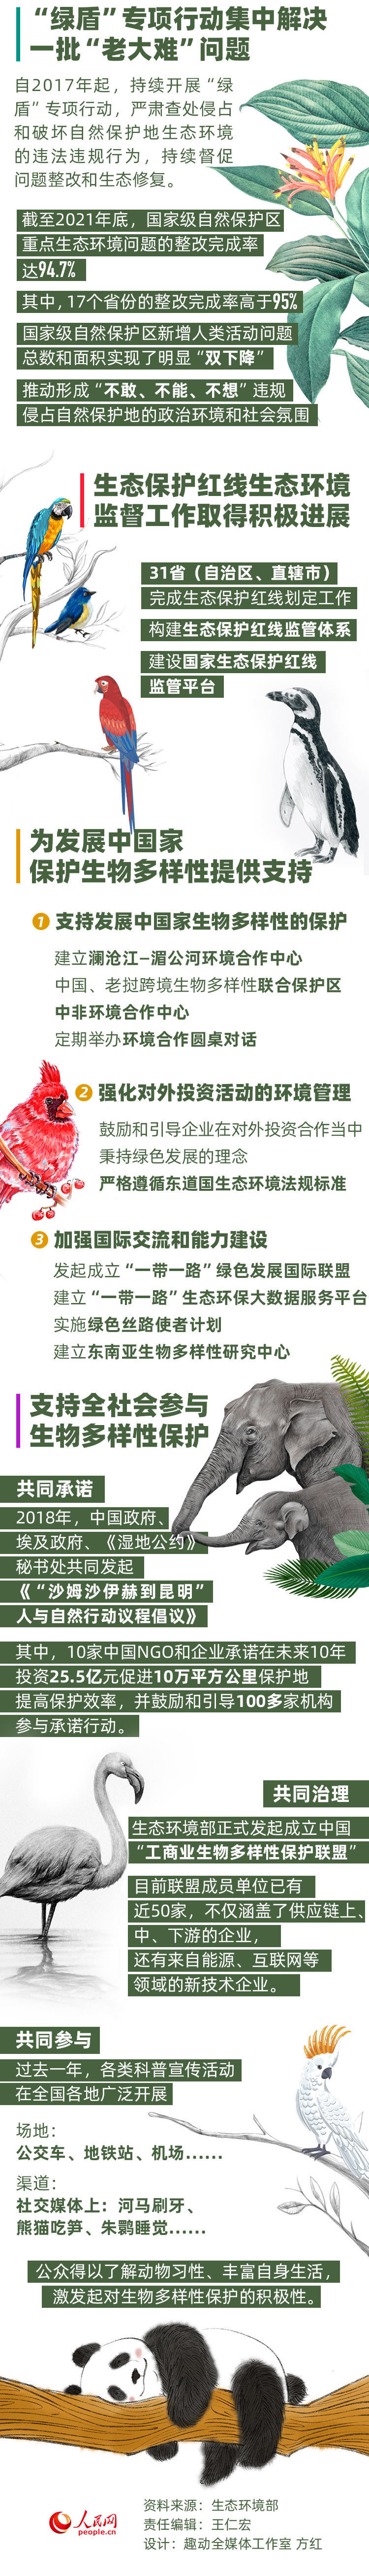 多样生物共同守护数读生物多样性保护的中国实践000407胜利股份